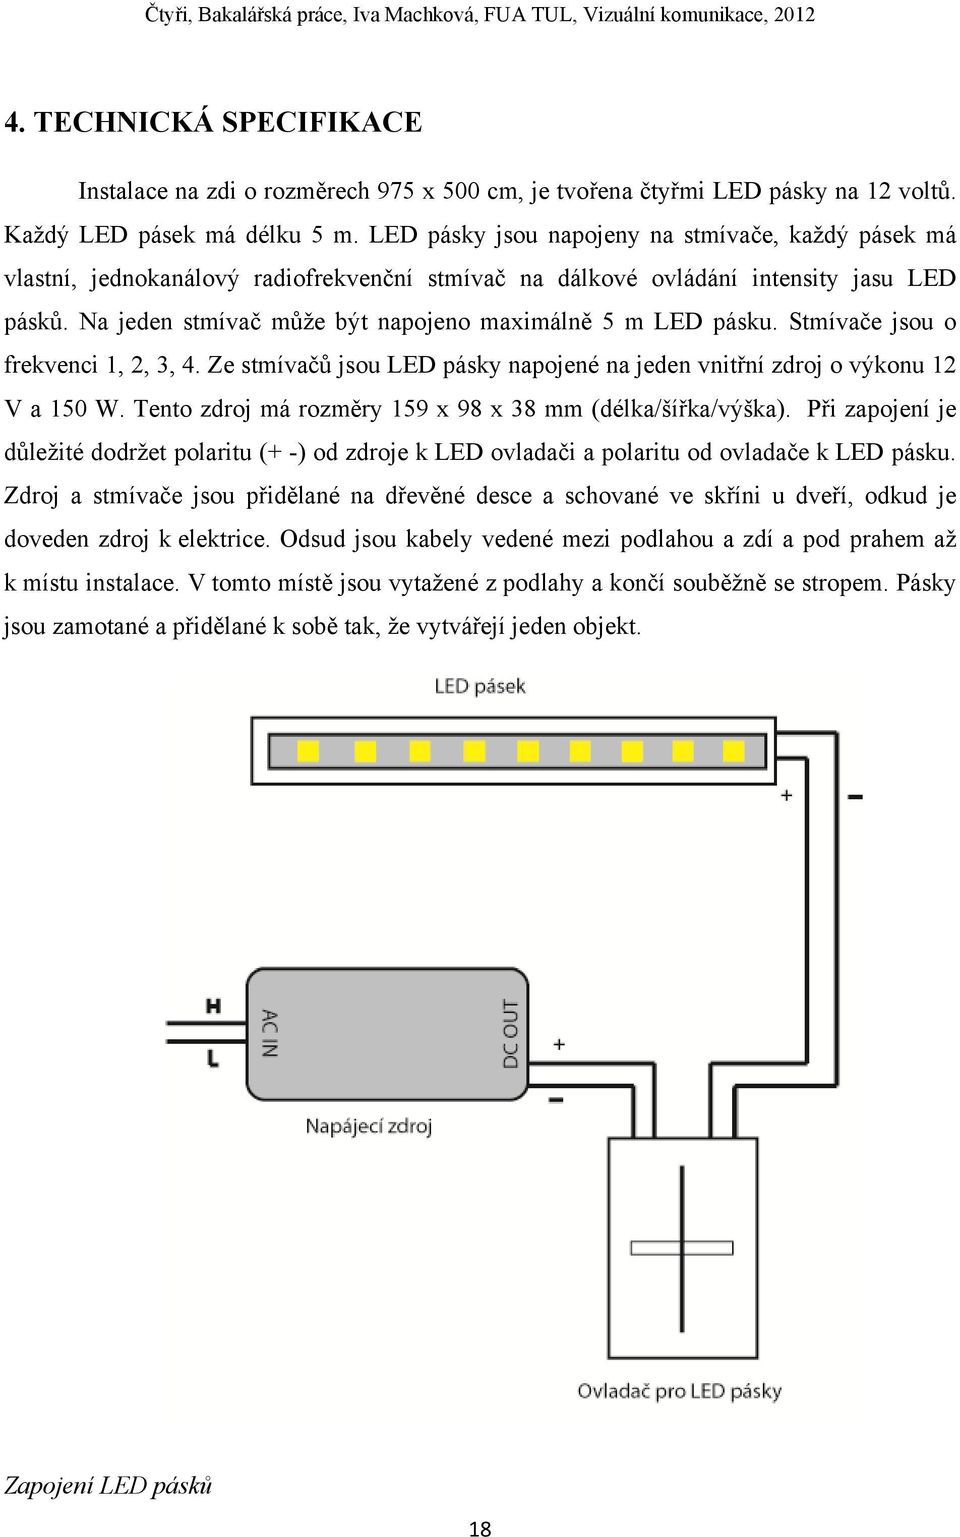 Na jeden stmívač může být napojeno maximálně 5 m LED pásku. Stmívače jsou o frekvenci 1, 2, 3, 4. Ze stmívačů jsou LED pásky napojené na jeden vnitřní zdroj o výkonu 12 V a 150 W.